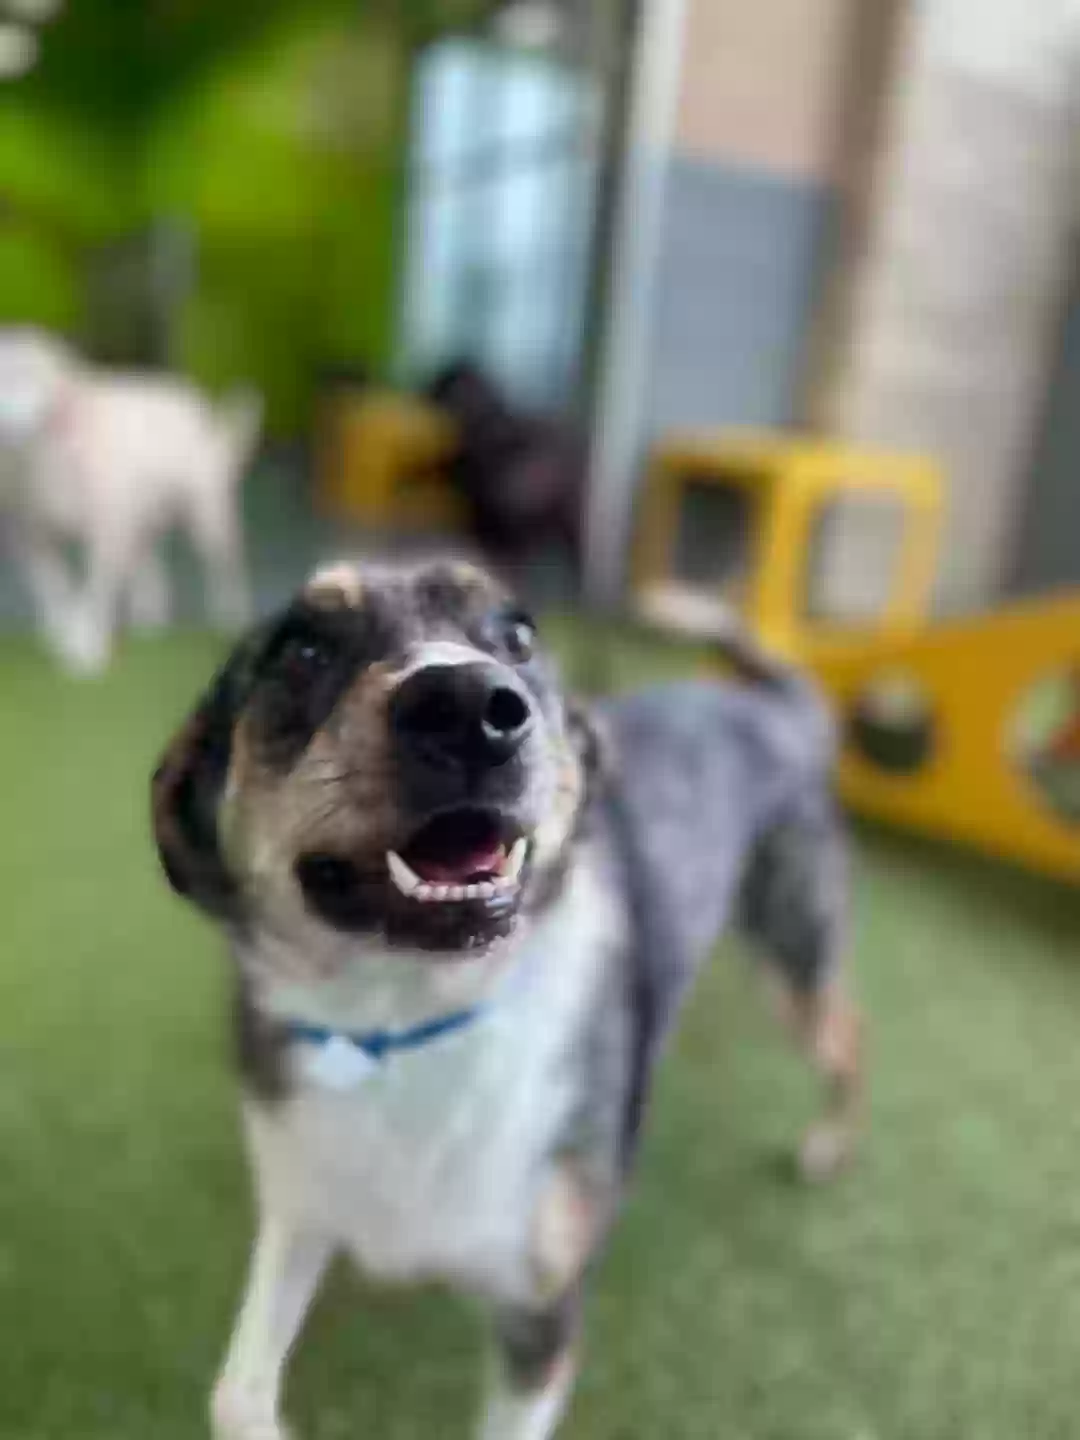 adoptable Dog in Arlington,TX named HANK